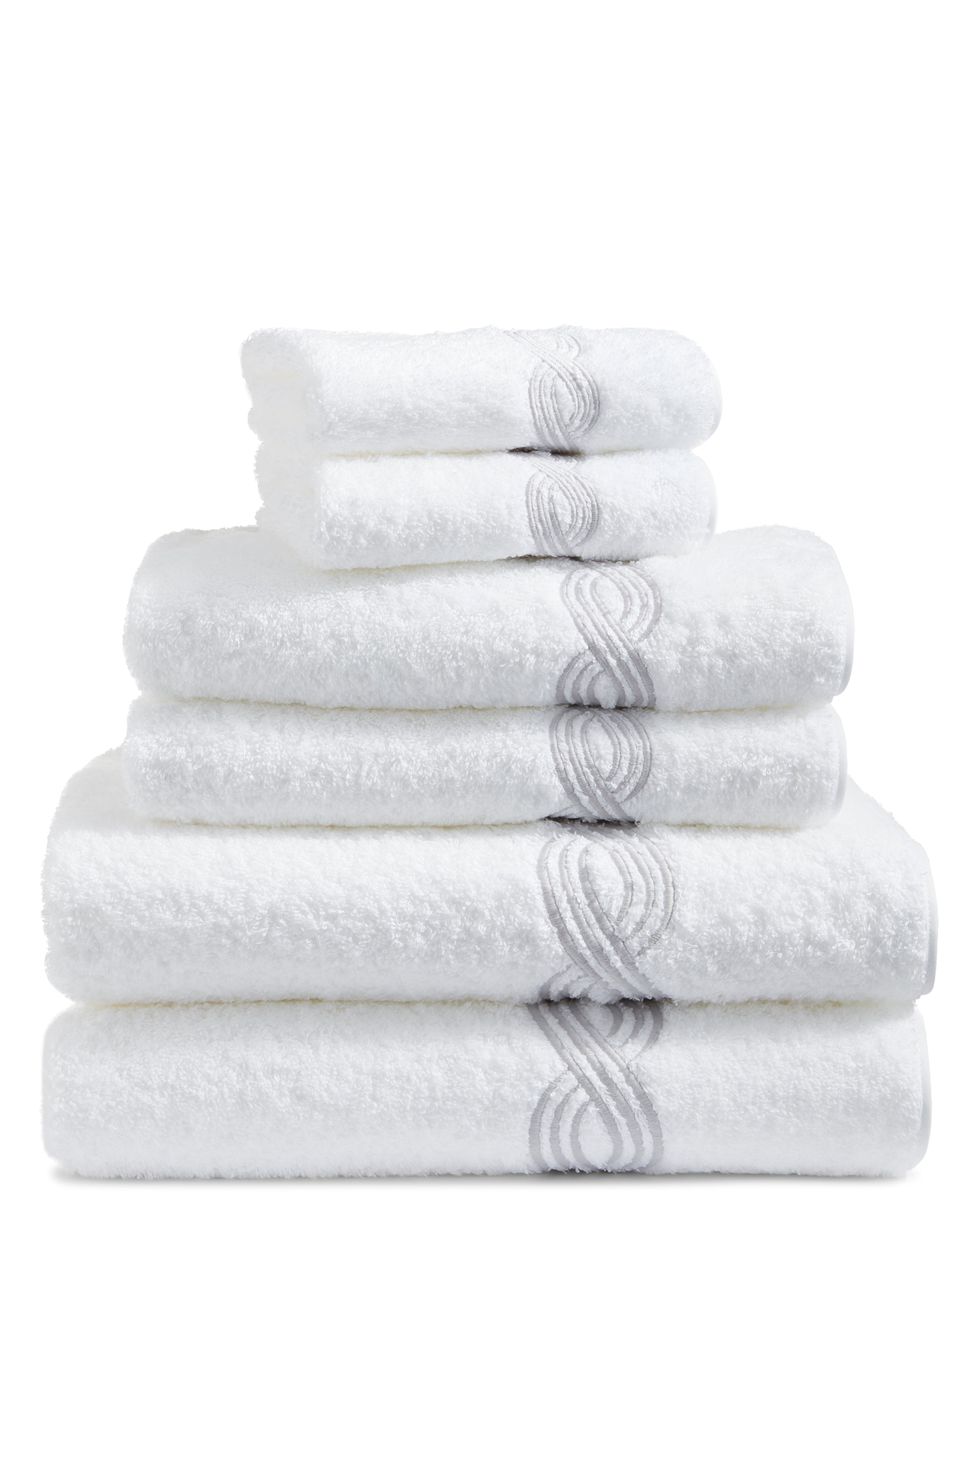 Triple Chain 6-Piece Towel Set